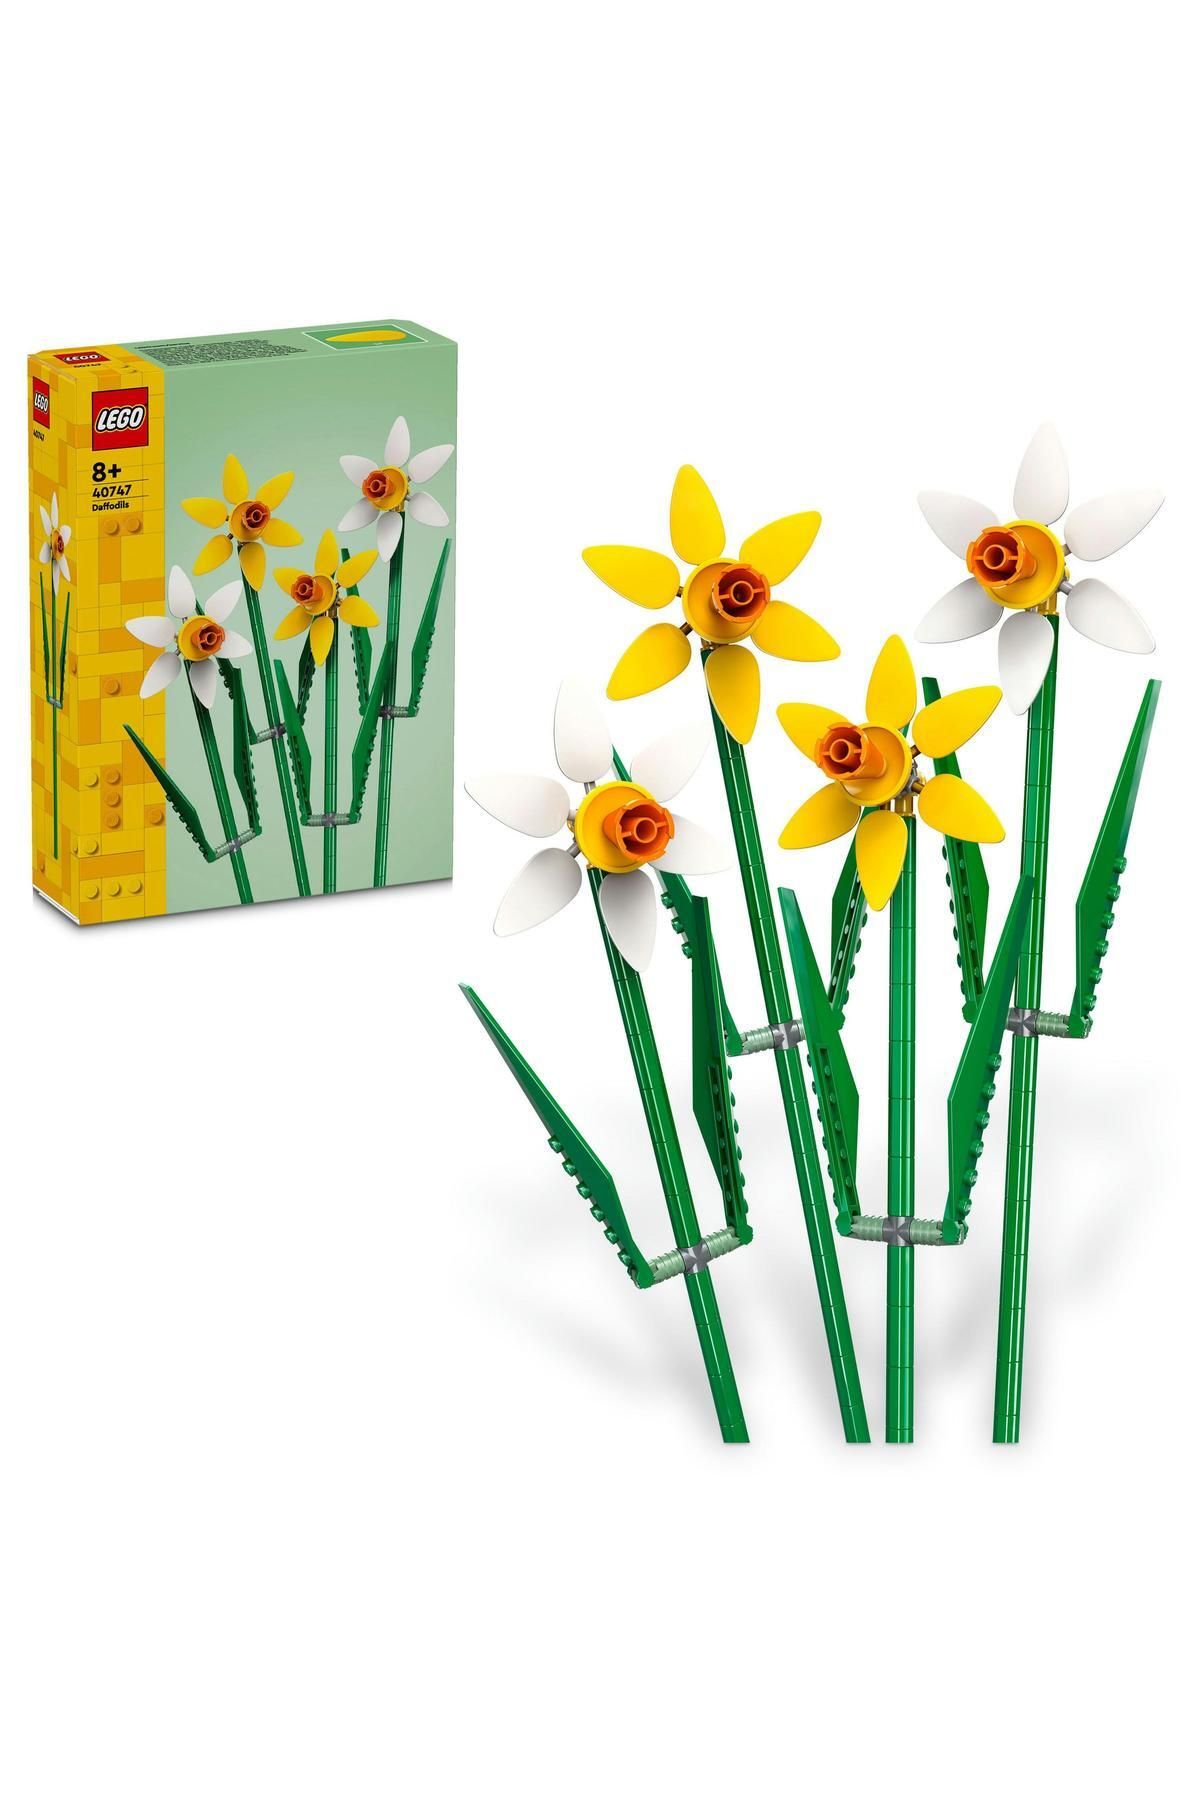 LEGO ® Icons Nergis Çiçek Yapım Seti 40747 - 8 Yaş ve Üzeri İçin Yapım Seti (216 Parça)